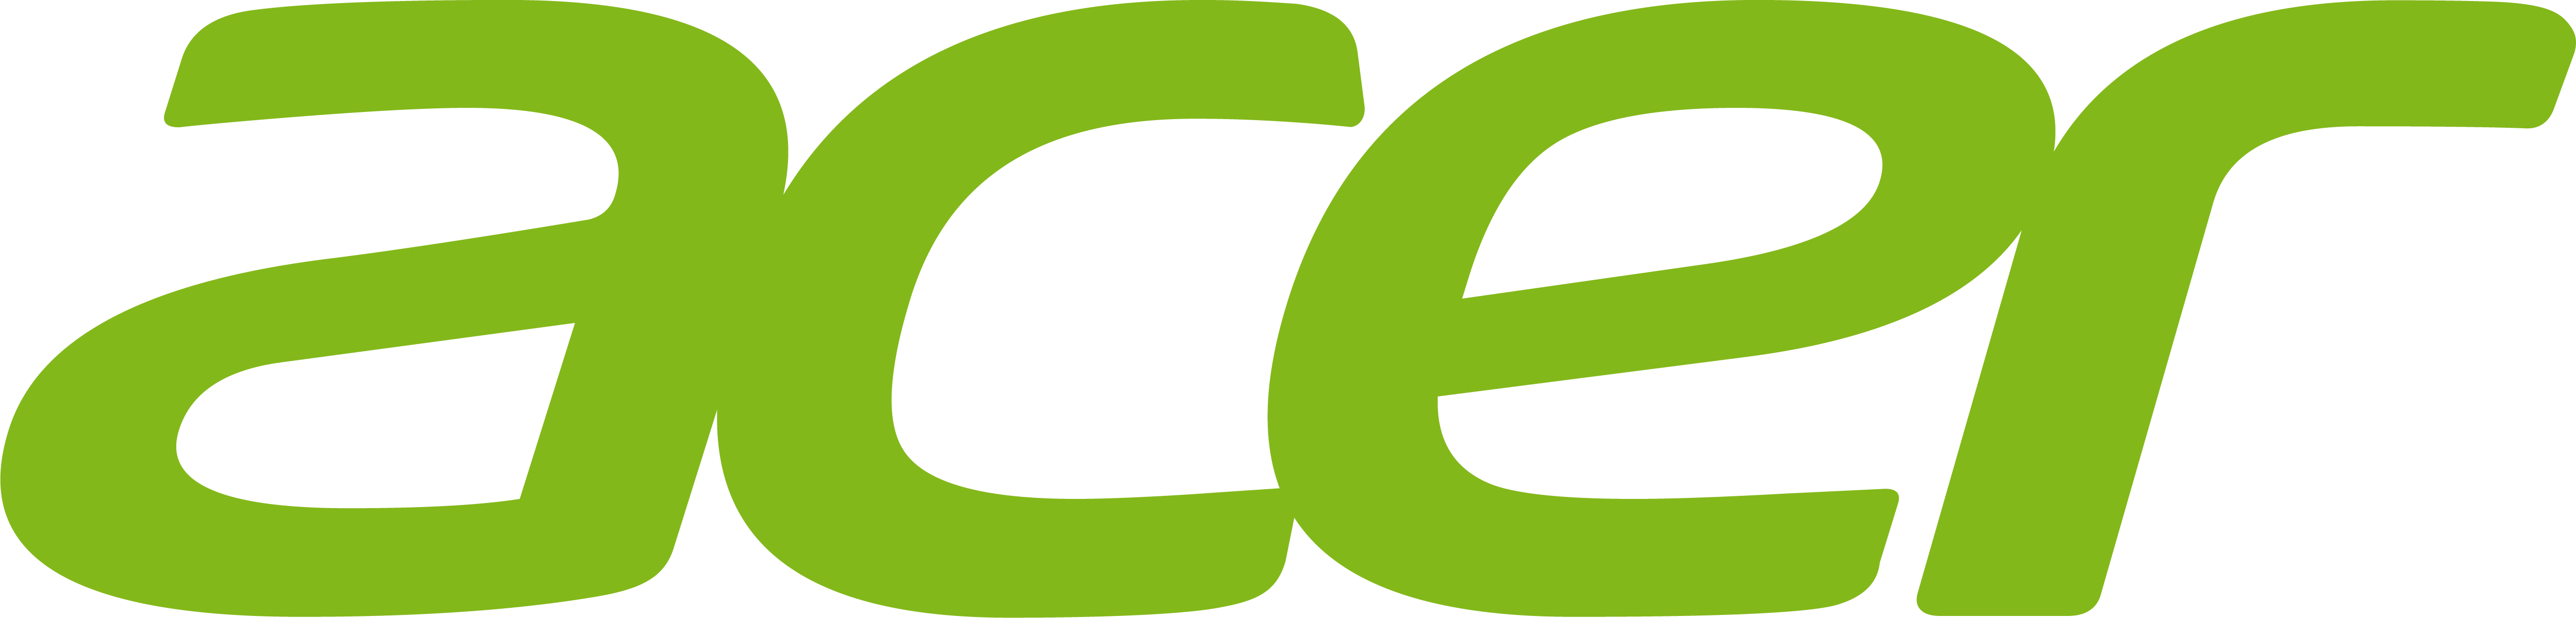 Logo_Acer.png